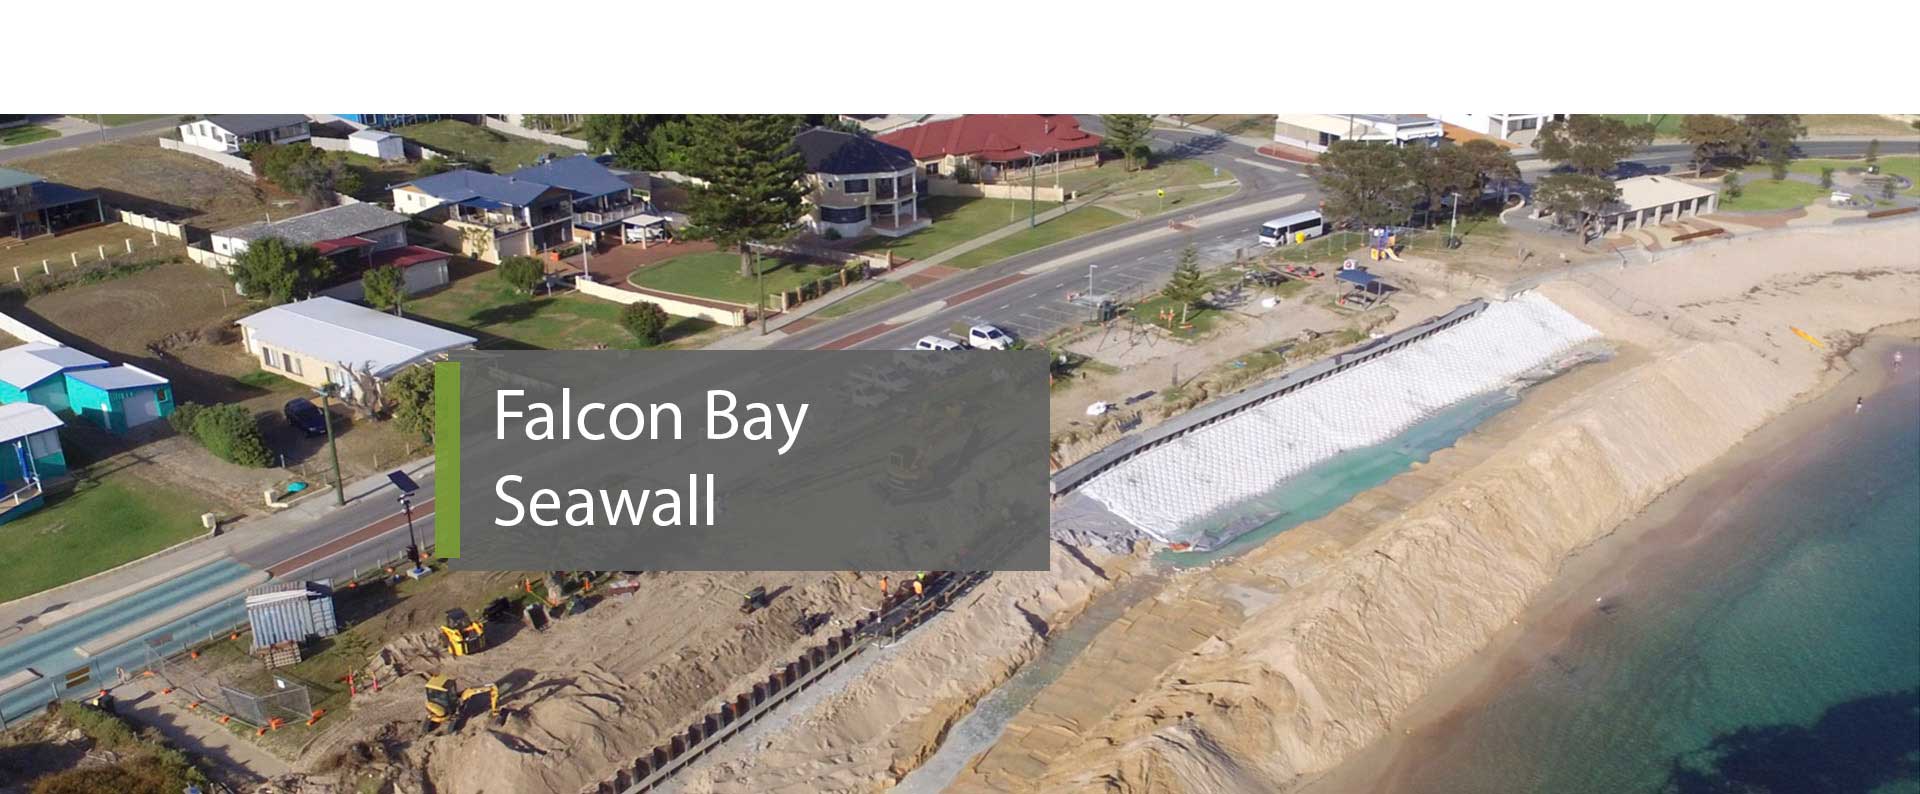 Falcon Bay Seawall